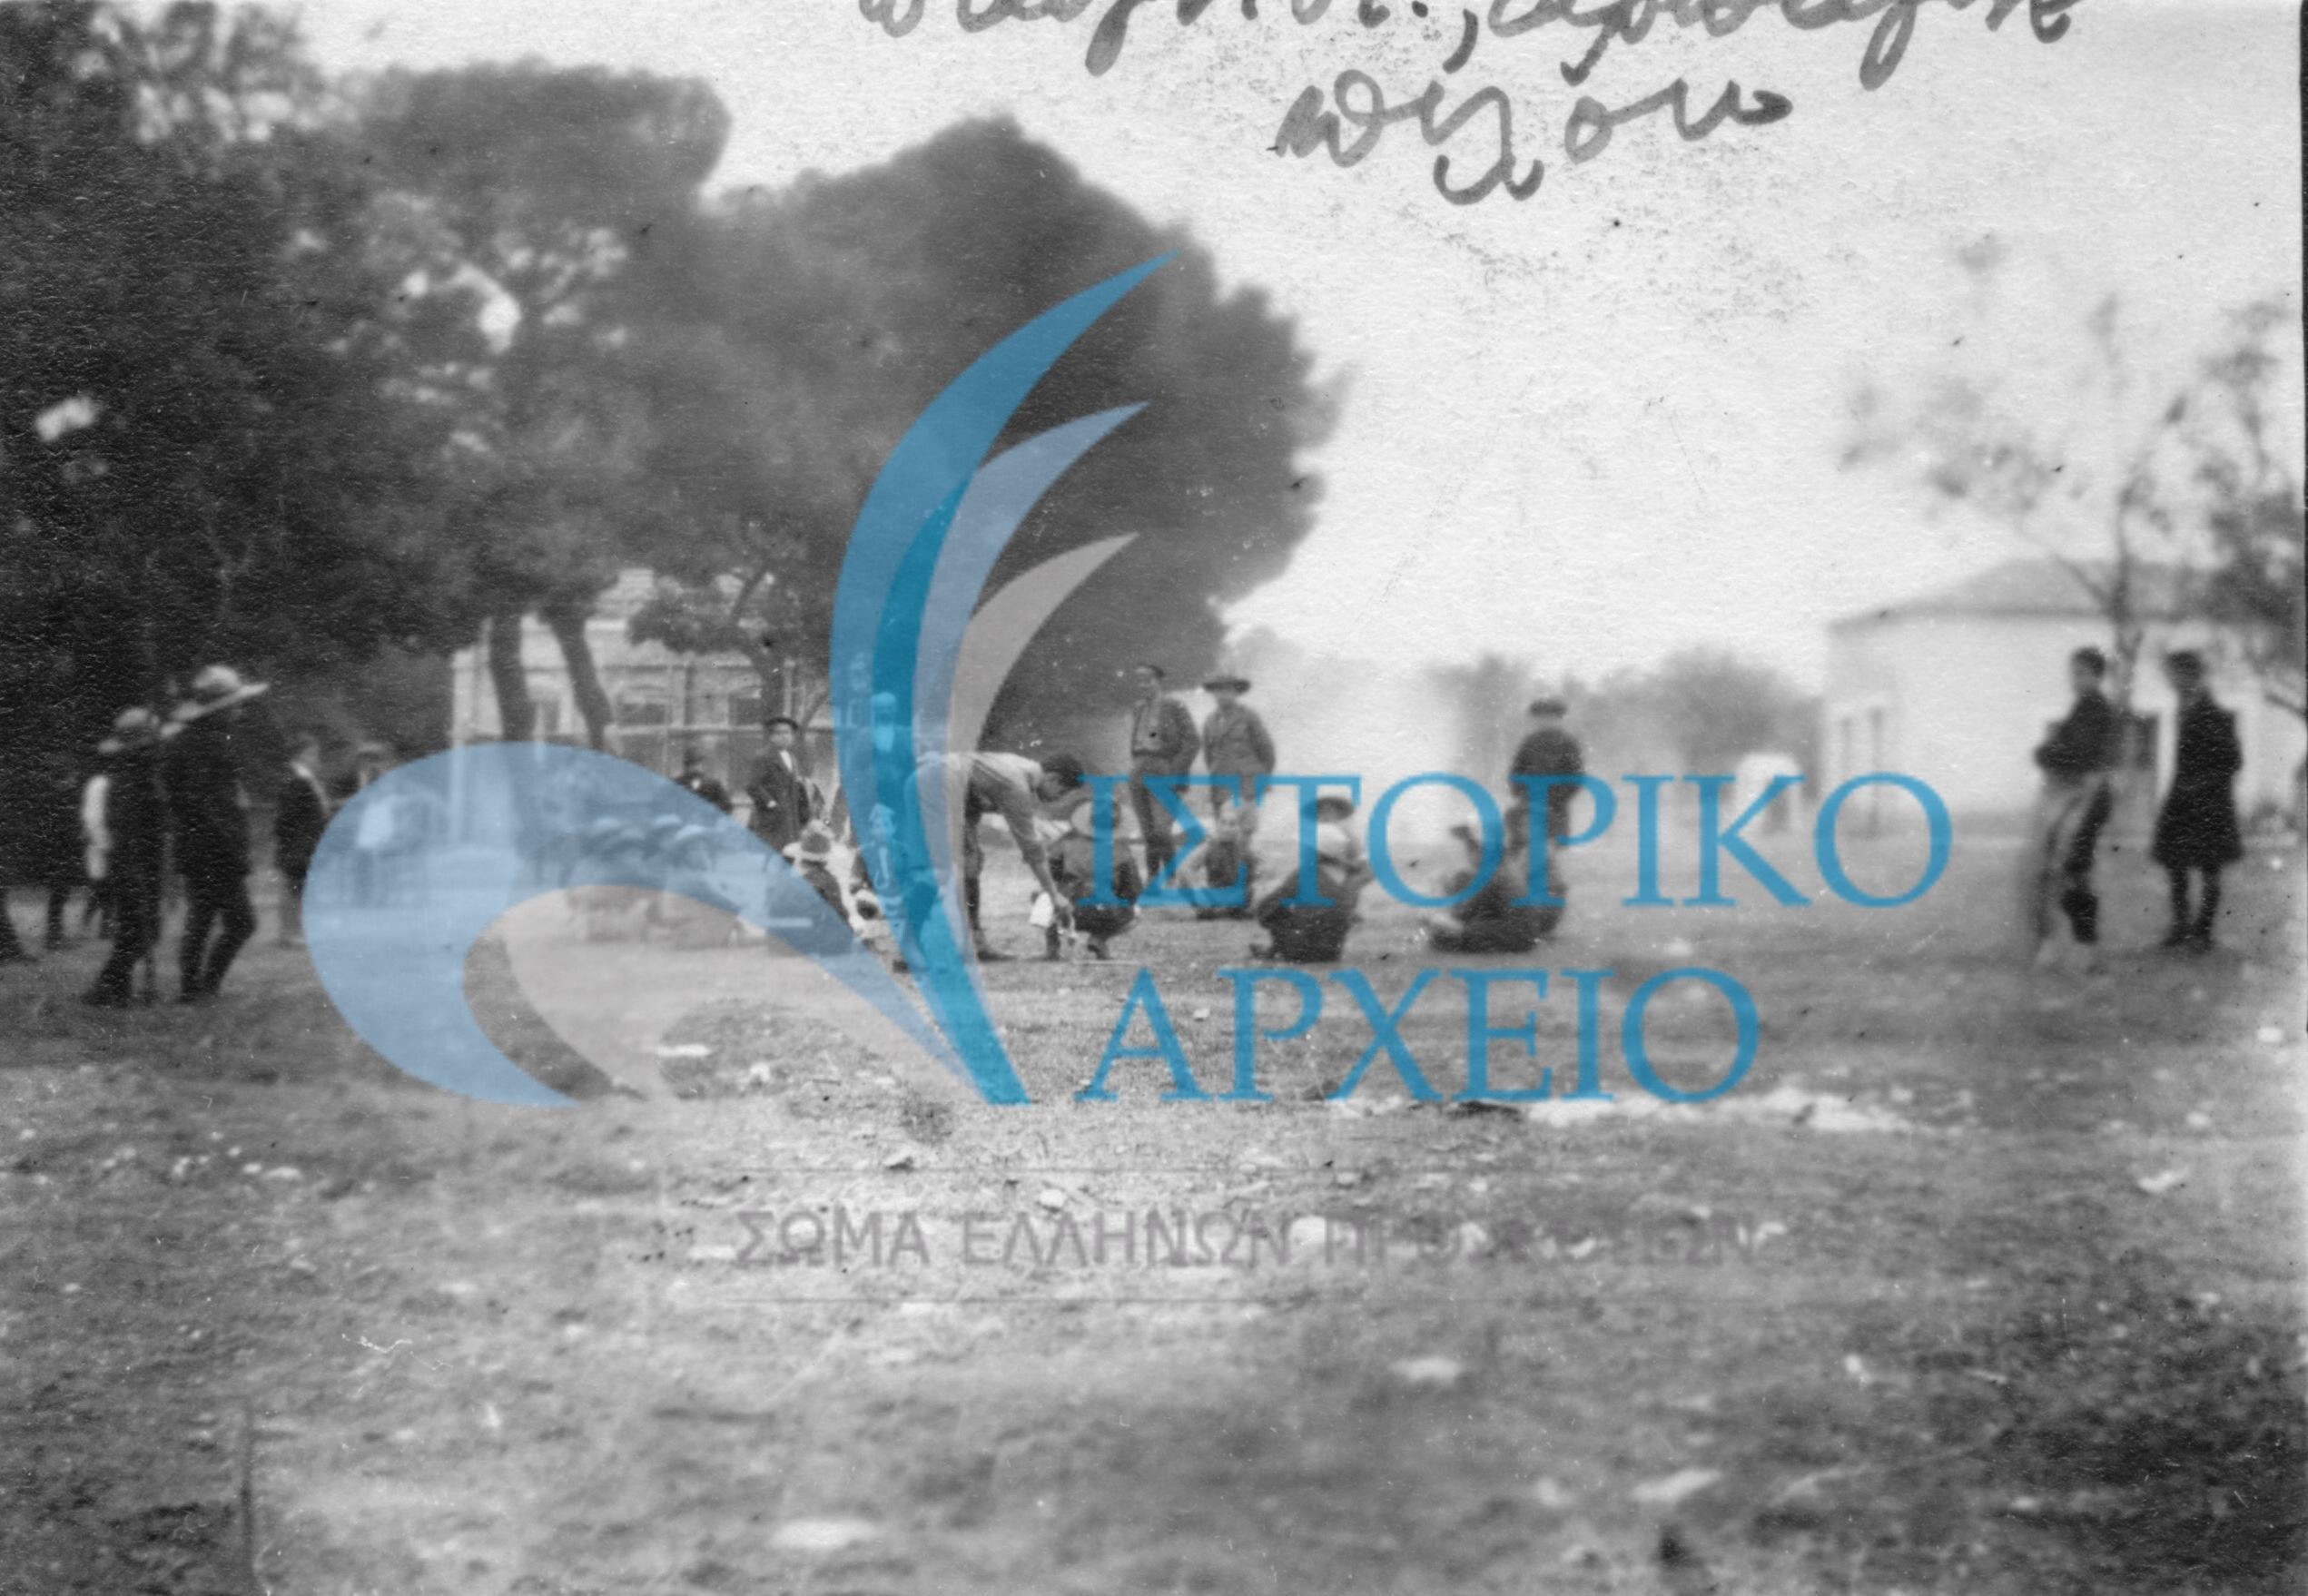 Οι πρώτες μεγάλες κατασκηνώσεις, οι προσκοπικές επιδείξεις στο Παναθηναϊκό Στάδιο και δράσεις στην δεύτερη δεκαετία ζωής των Ελλήνων Προσκόπων. 